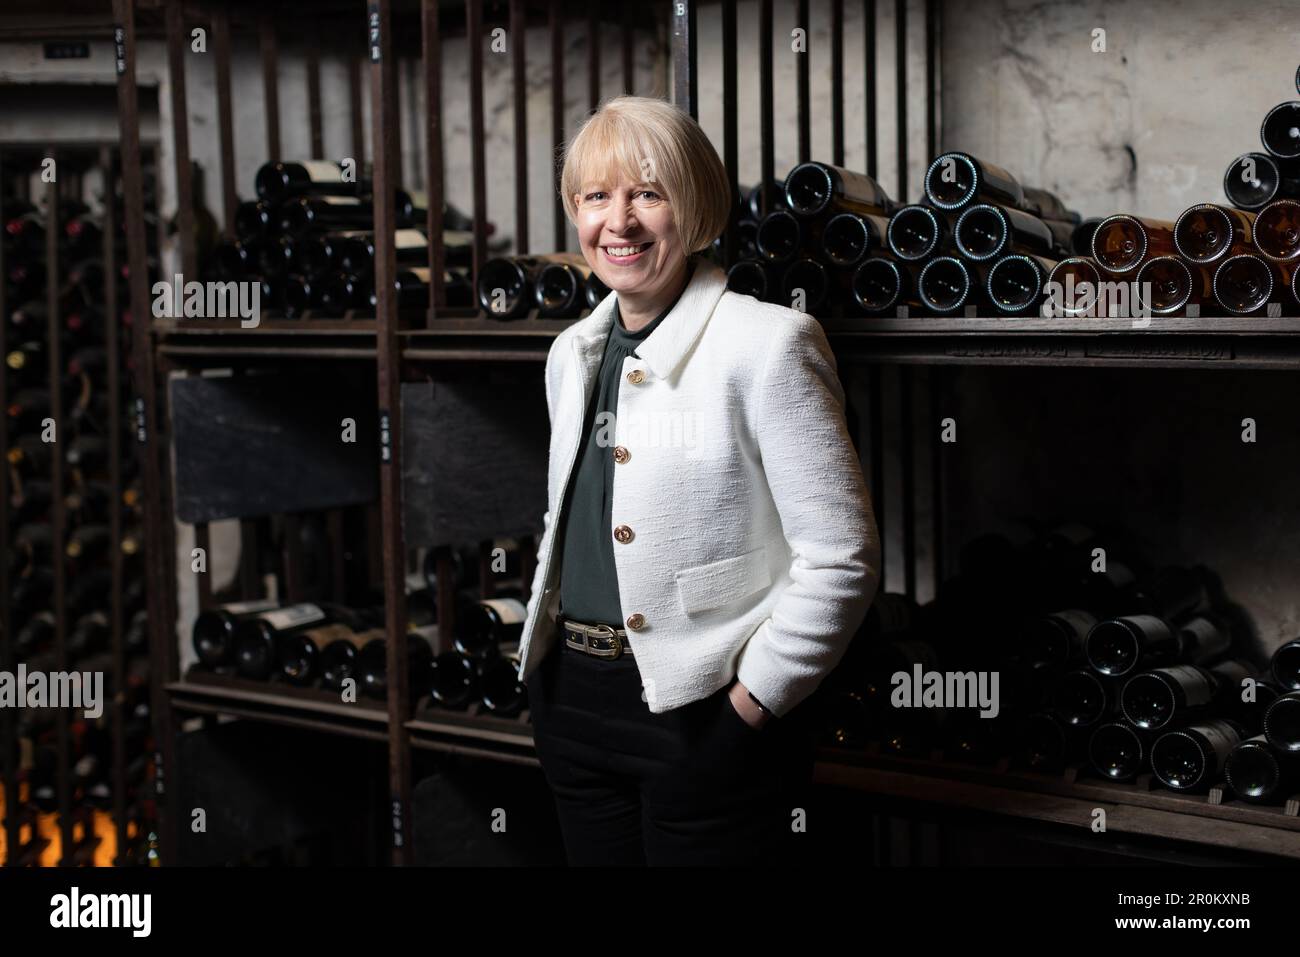 Emma Fox, directrice générale de Berry Bros & Rudd, le plus ancien marchand de vins et spiritueux de Londres, St James's, Londres, Angleterre, Royaume-Uni Banque D'Images